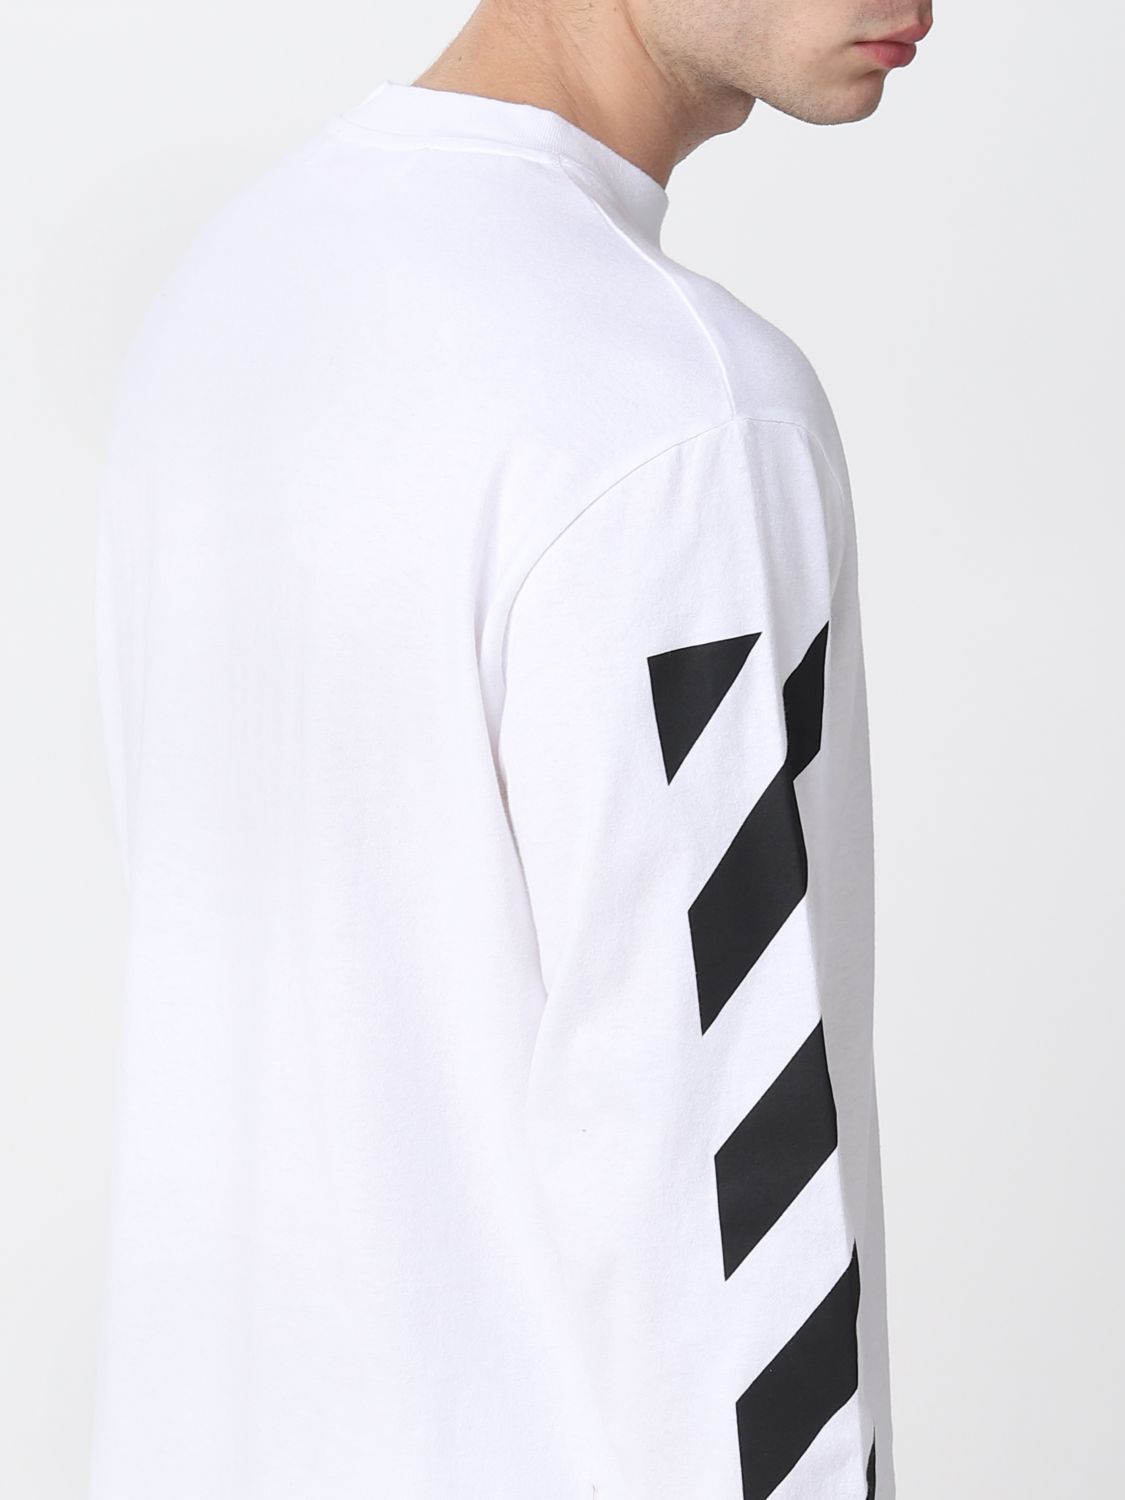 オフホワイト(OFF-WHITE): Tシャツ メンズ - ホワイト | Tシャツ オフホワイト OMAB064C99JER001 GIGLIO.COM